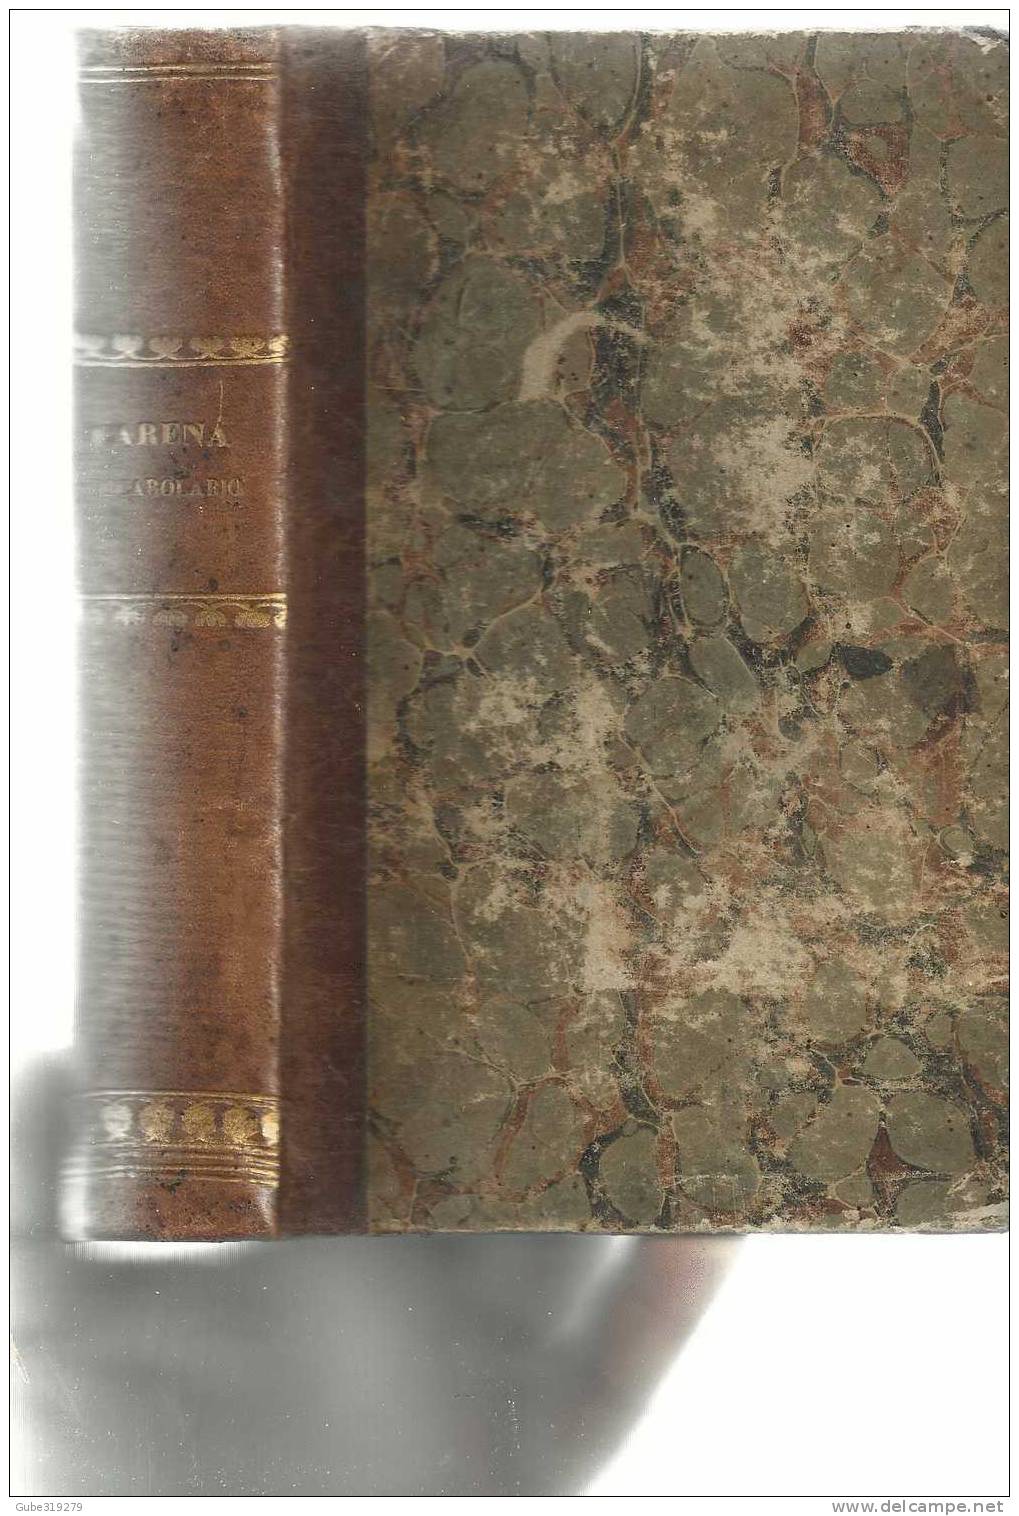 ANNO 1859 - REF.10- VOCABOLARIO DOMESTICO DEL PROF.  GIACINTO CARENA -4ª EDIZIONE G.MARGHIERI - C BOUTTEAUX -NAPOLI - Libri Antichi